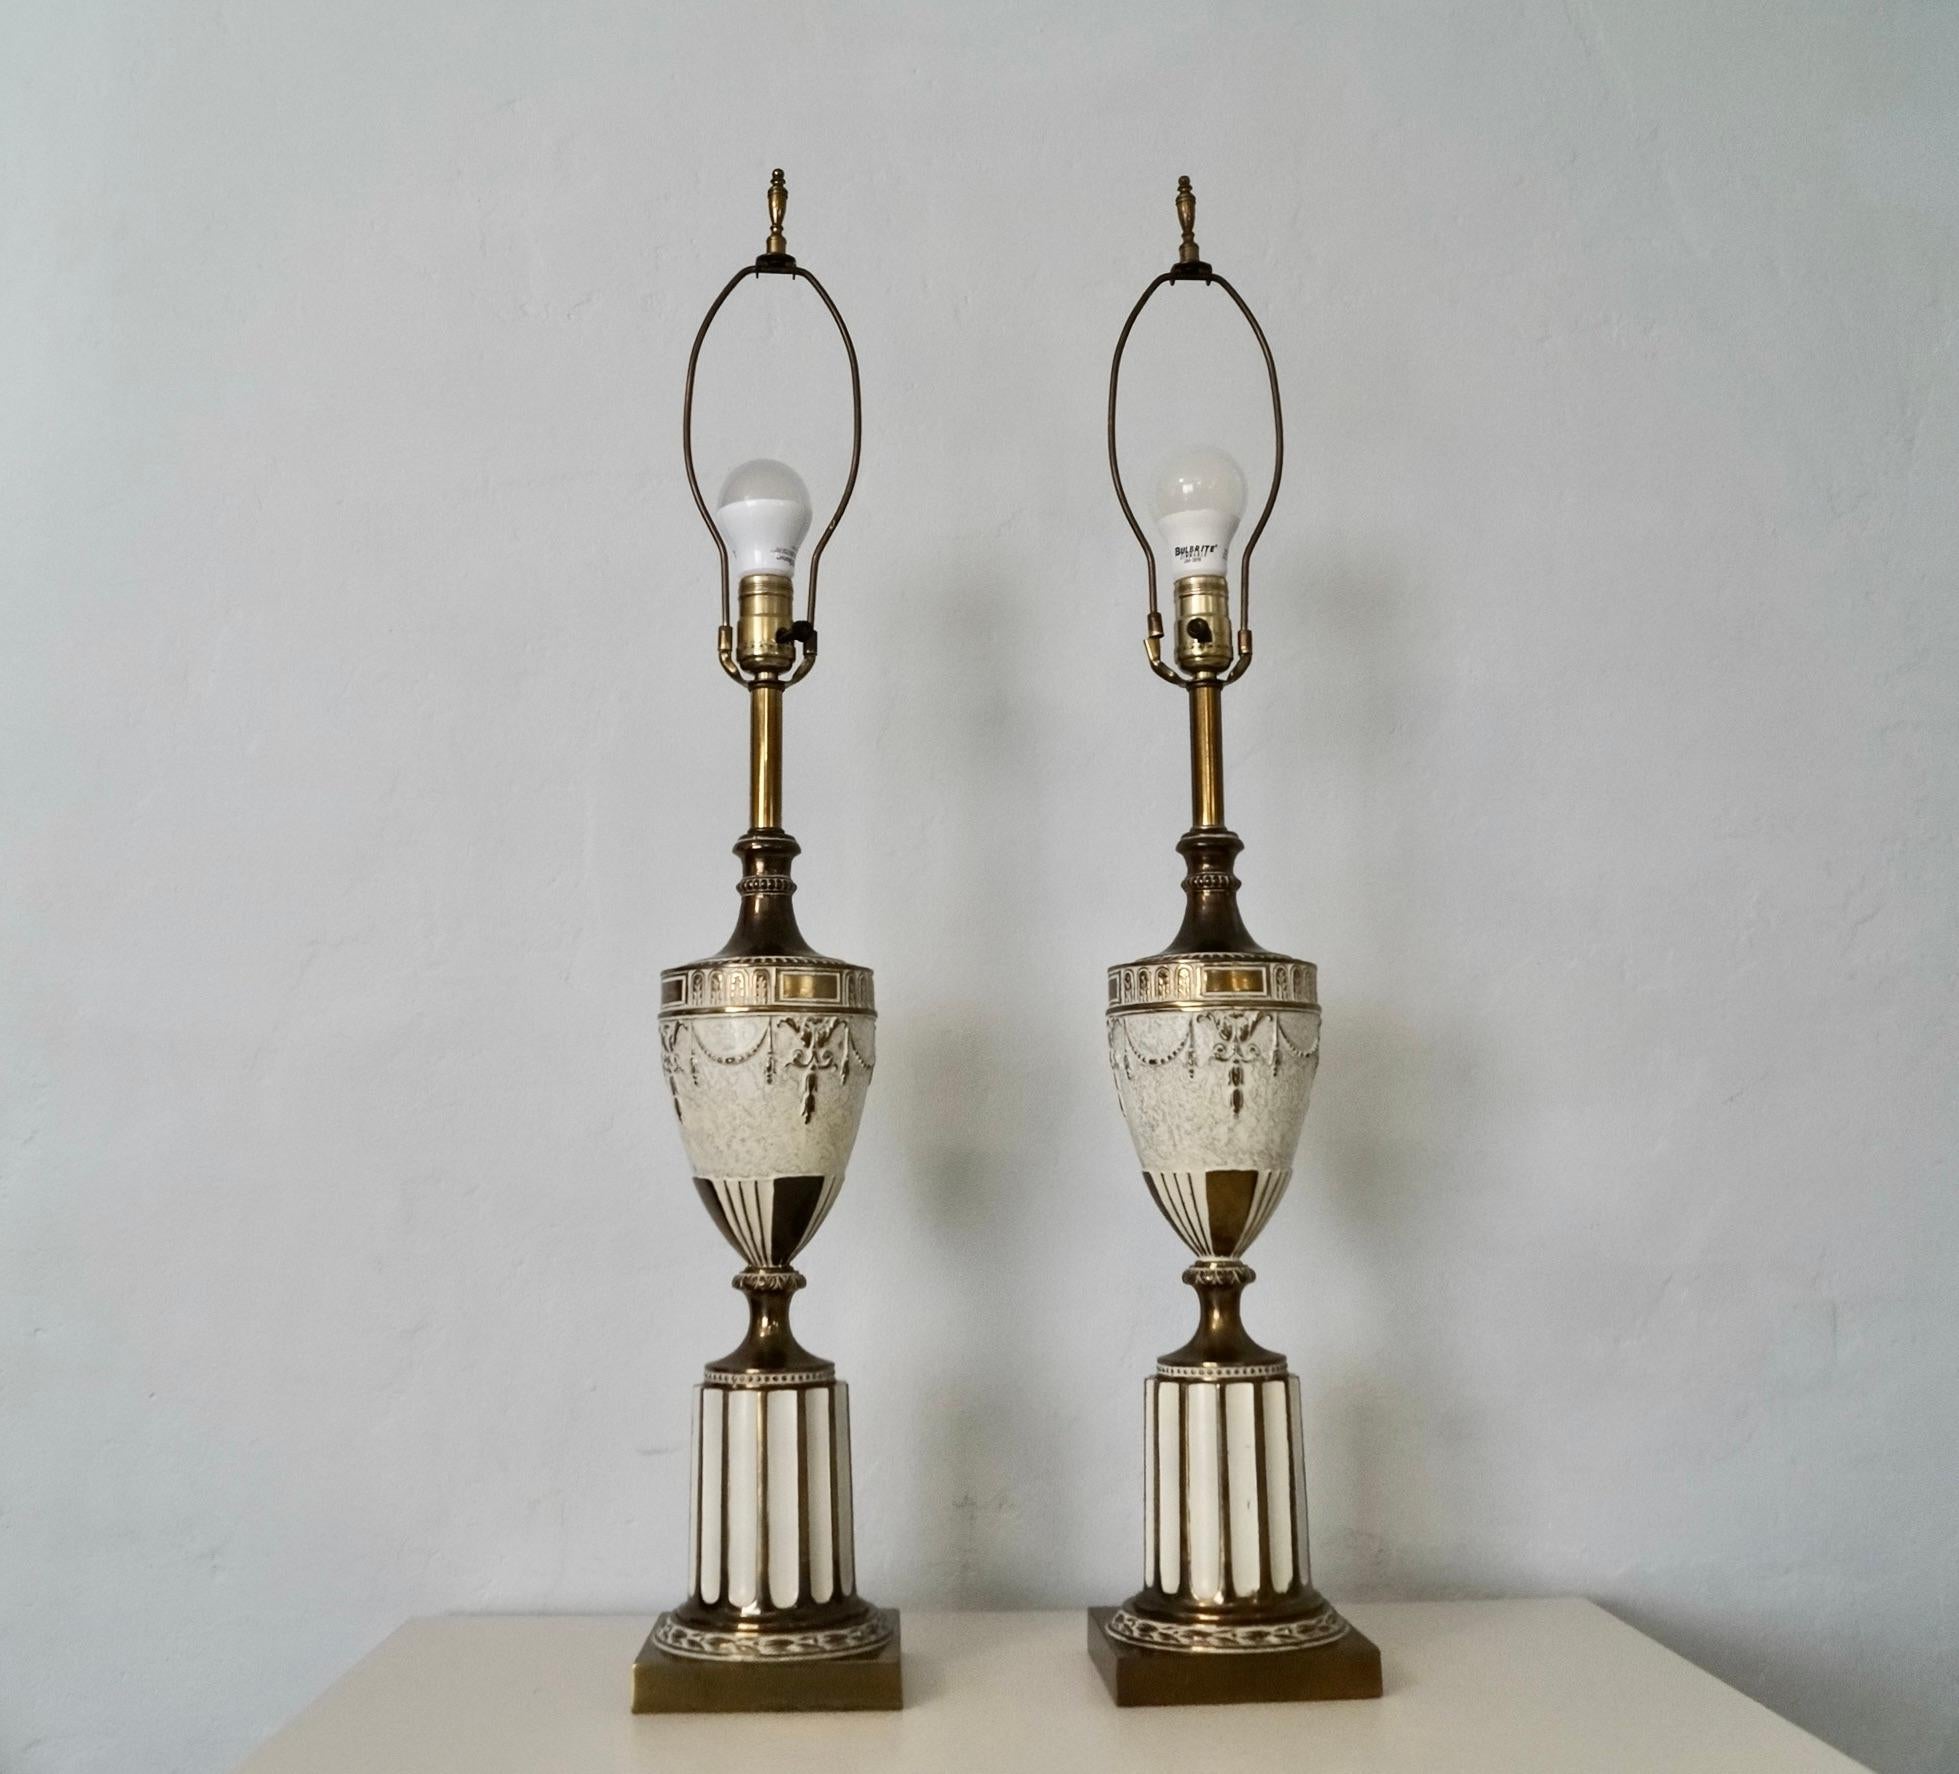 Paire de lampes de table d'inspiration néoclassique romaine ancienne à vendre. Fabriqués en laiton et en métal, ils sont d'une grande beauté. Ils sont en excellent état d'origine avec une certaine patine du laiton. Elles sont d'un blanc antique et